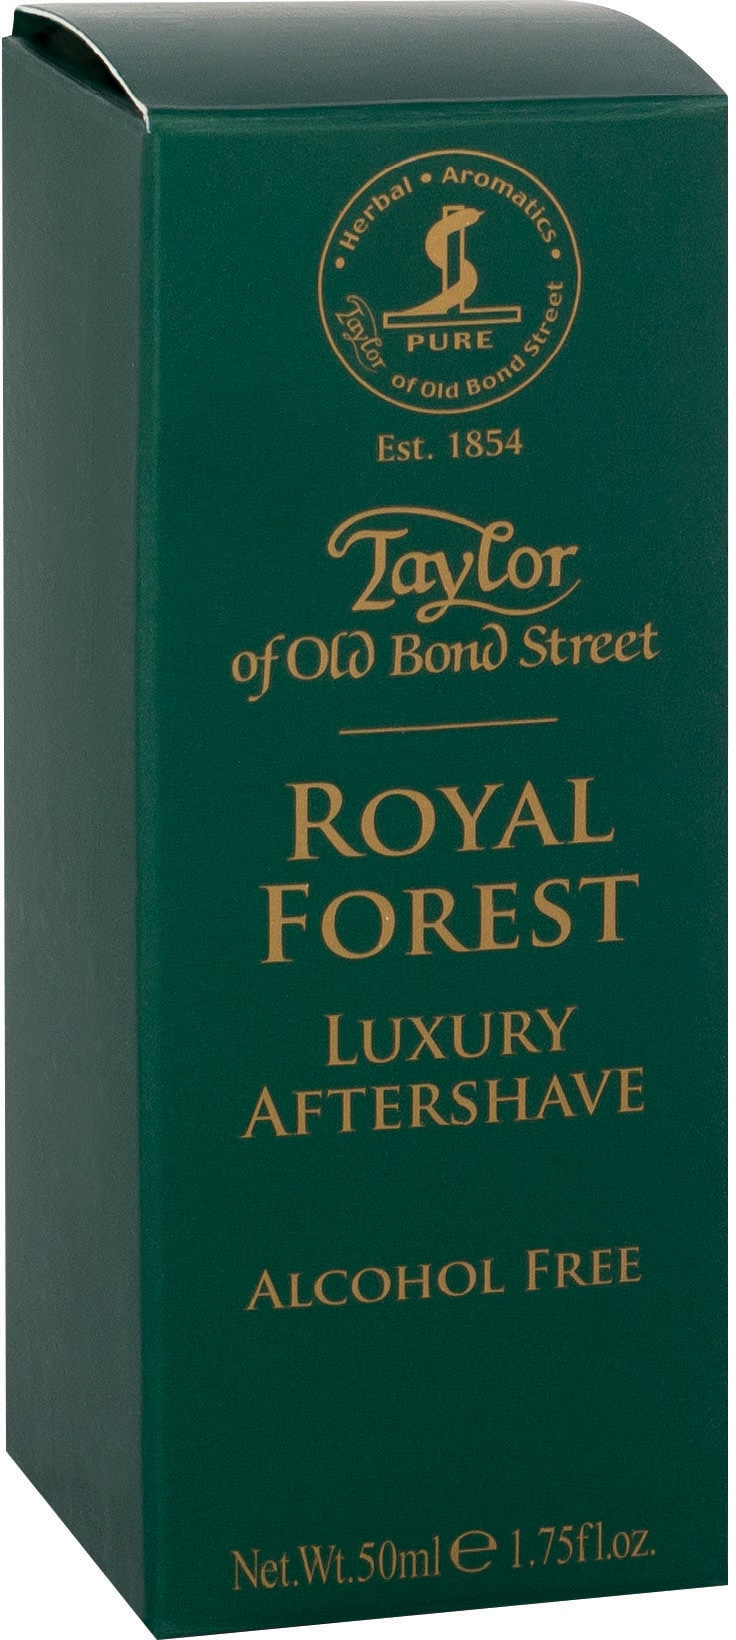 online Taylor After-Shave | Aftershave Royal of »Luxury BAUR bestellen Street Bond Forest« Old